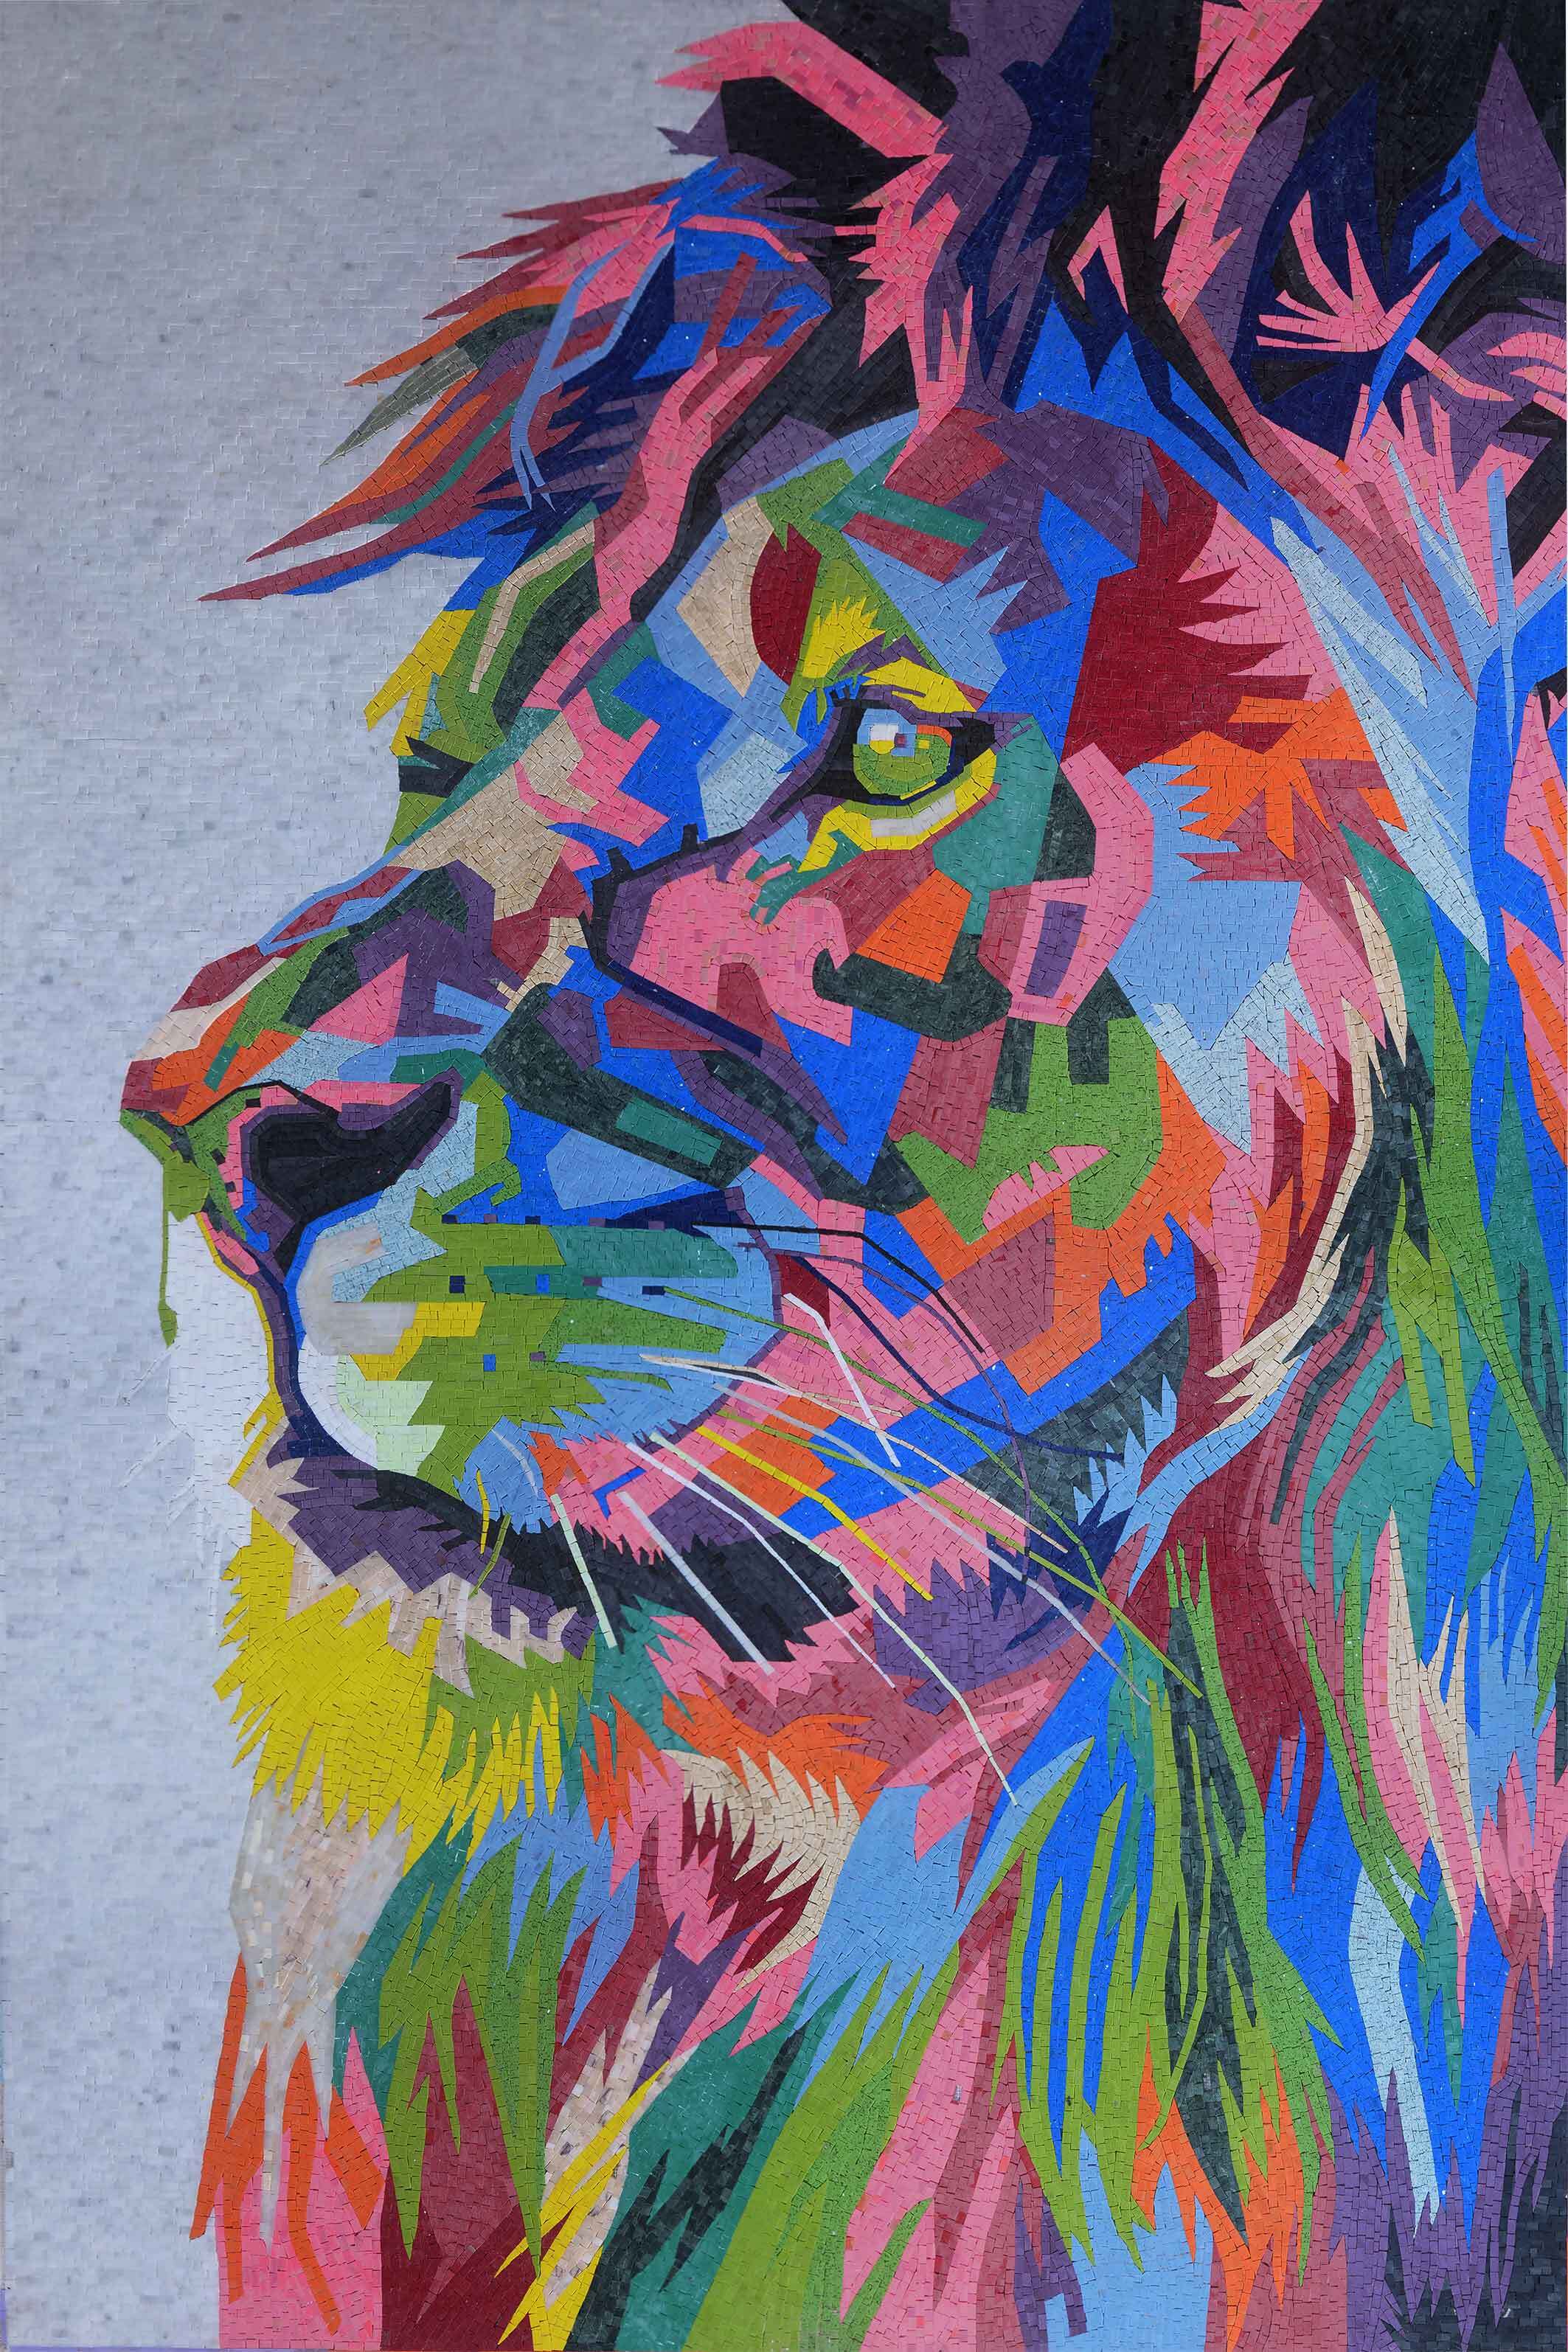 Rainbow Leopard Diamond Painting, DIY Animal Diamond Mosaic